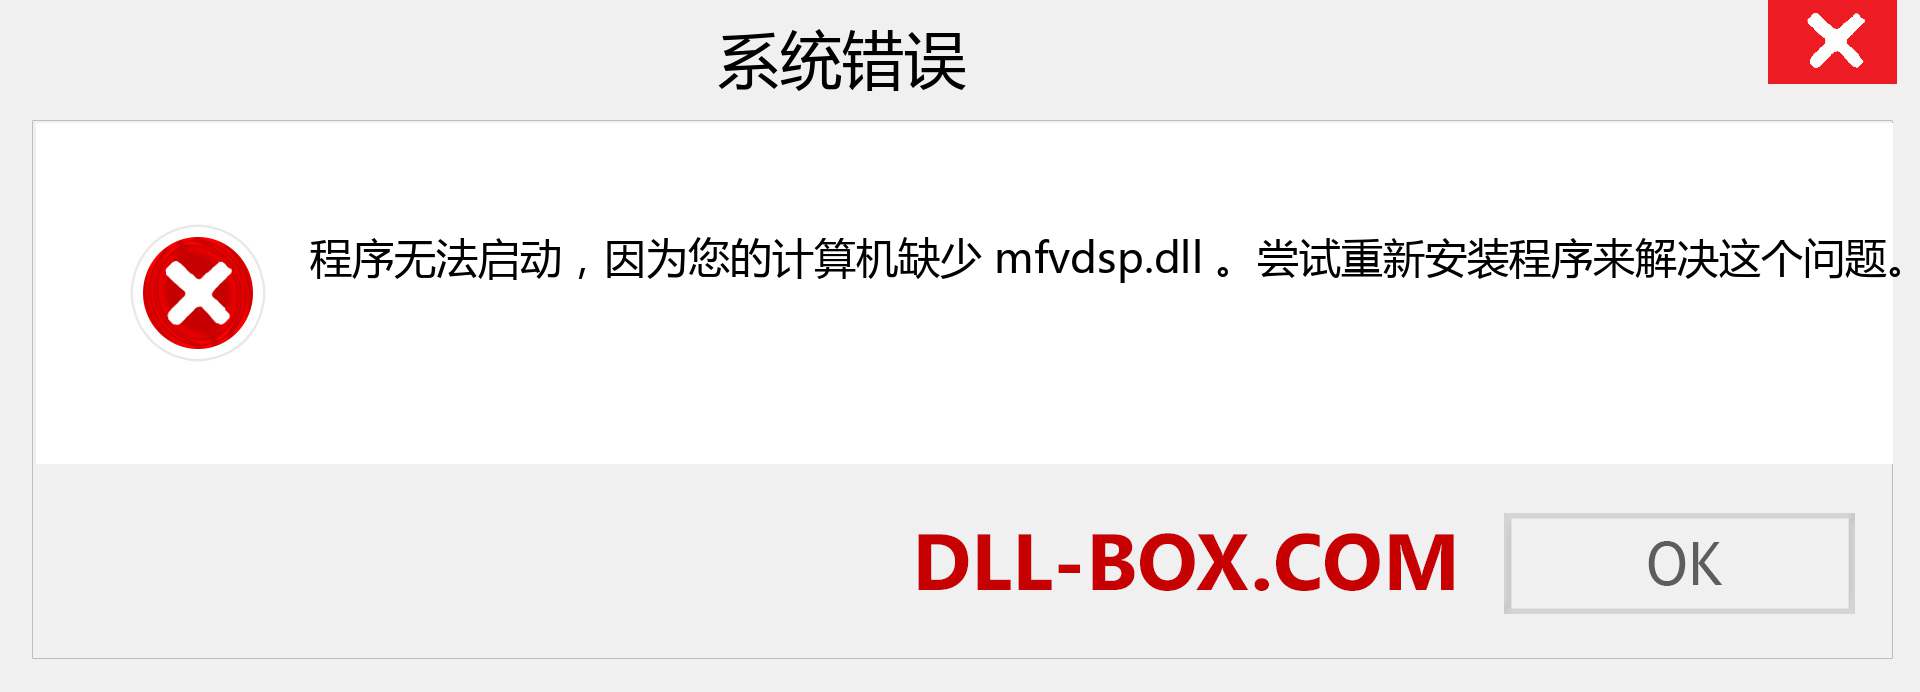 mfvdsp.dll 文件丢失？。 适用于 Windows 7、8、10 的下载 - 修复 Windows、照片、图像上的 mfvdsp dll 丢失错误